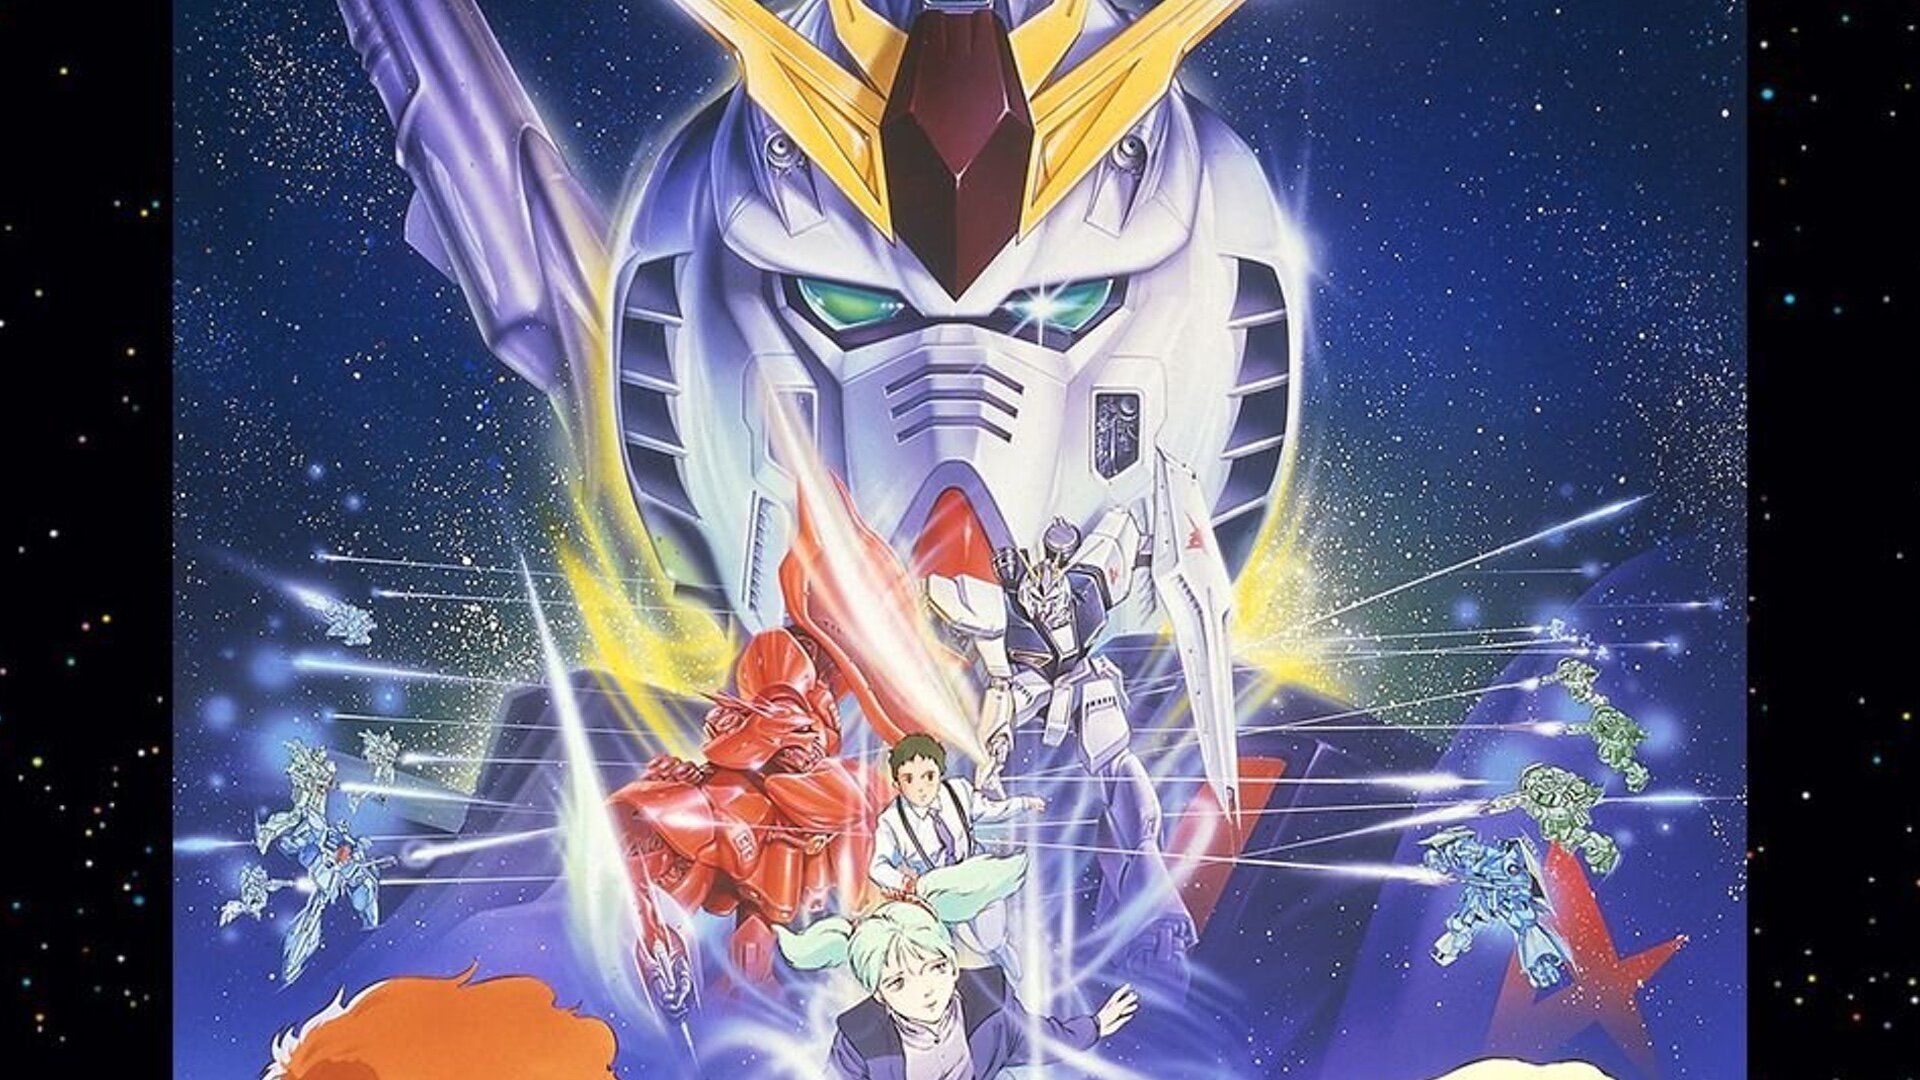 Gundams: Ja jaunajiem faniem vajadzētu sākt ar klasisko Mecha franšīzi